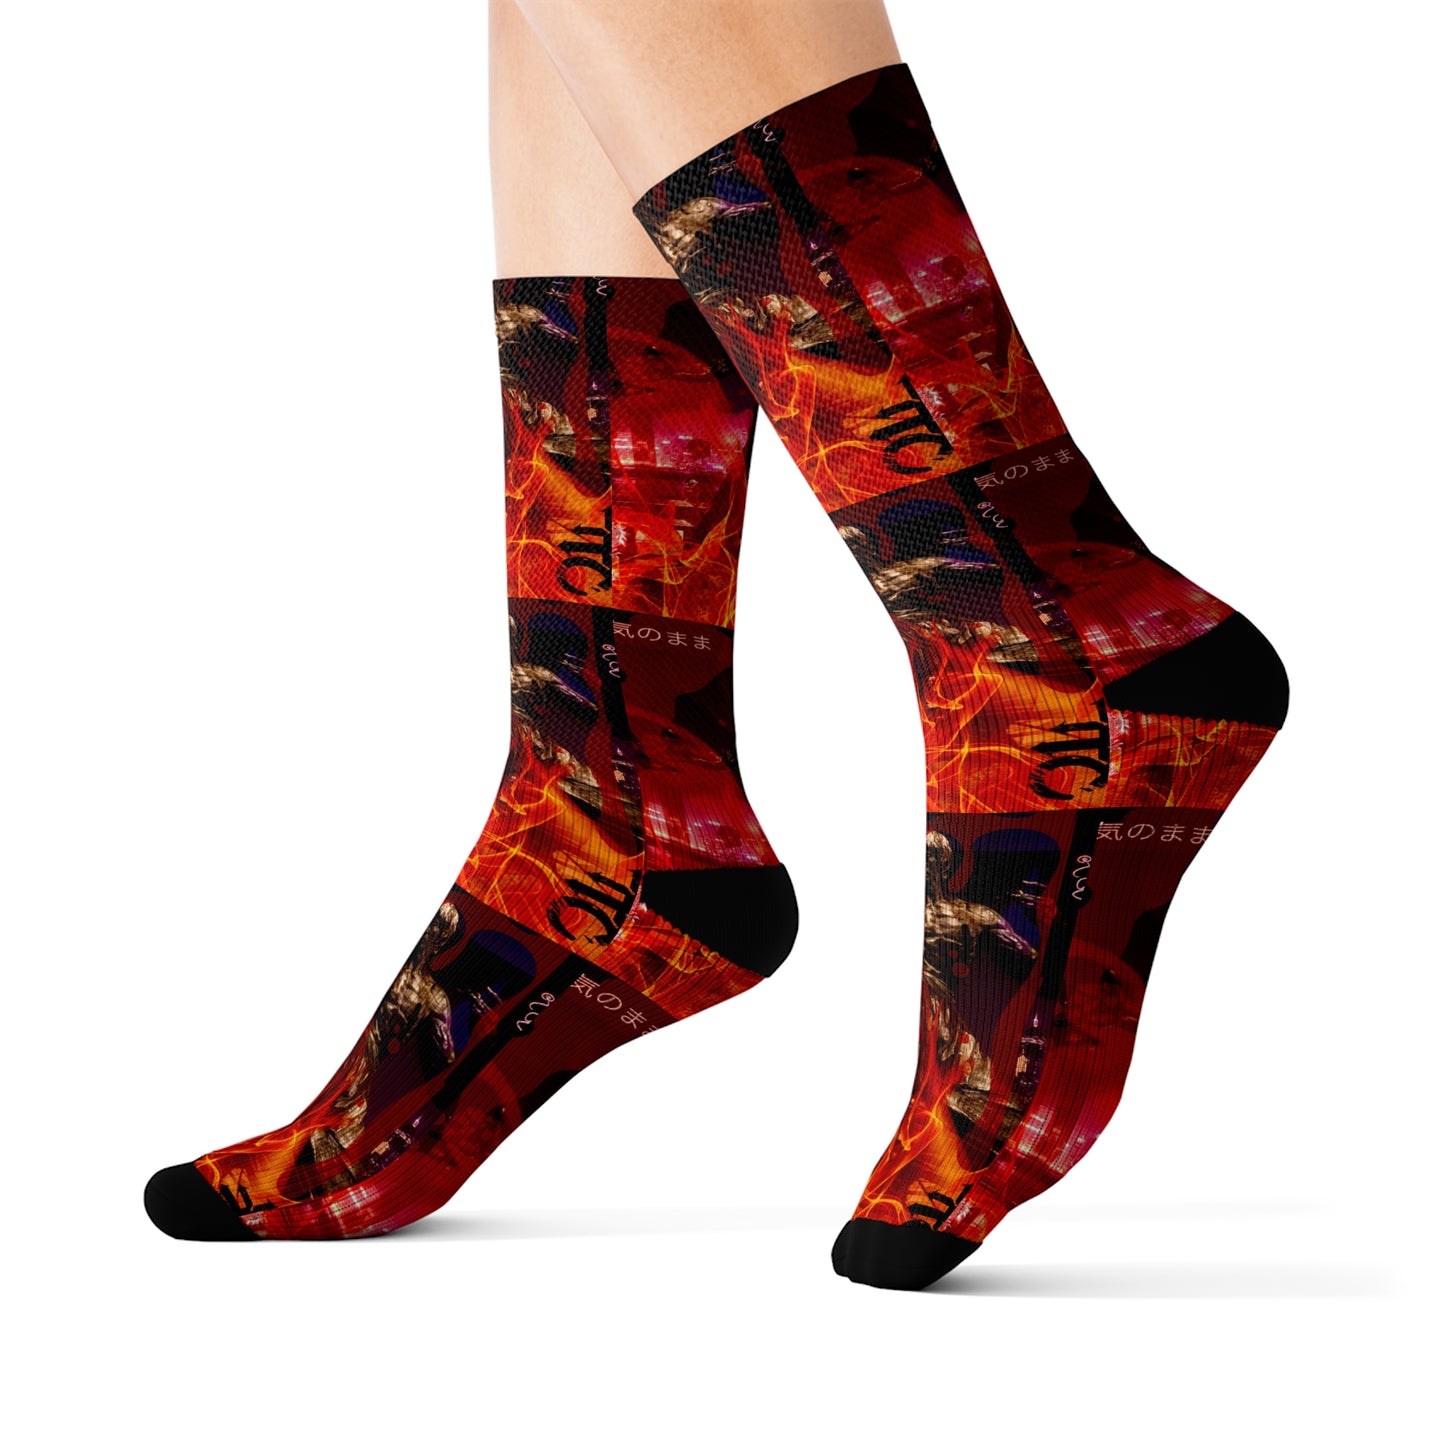 Bruce Lee Novelty Socks, Cool Casual Fun Socks, for Men Women, Novelty Gift